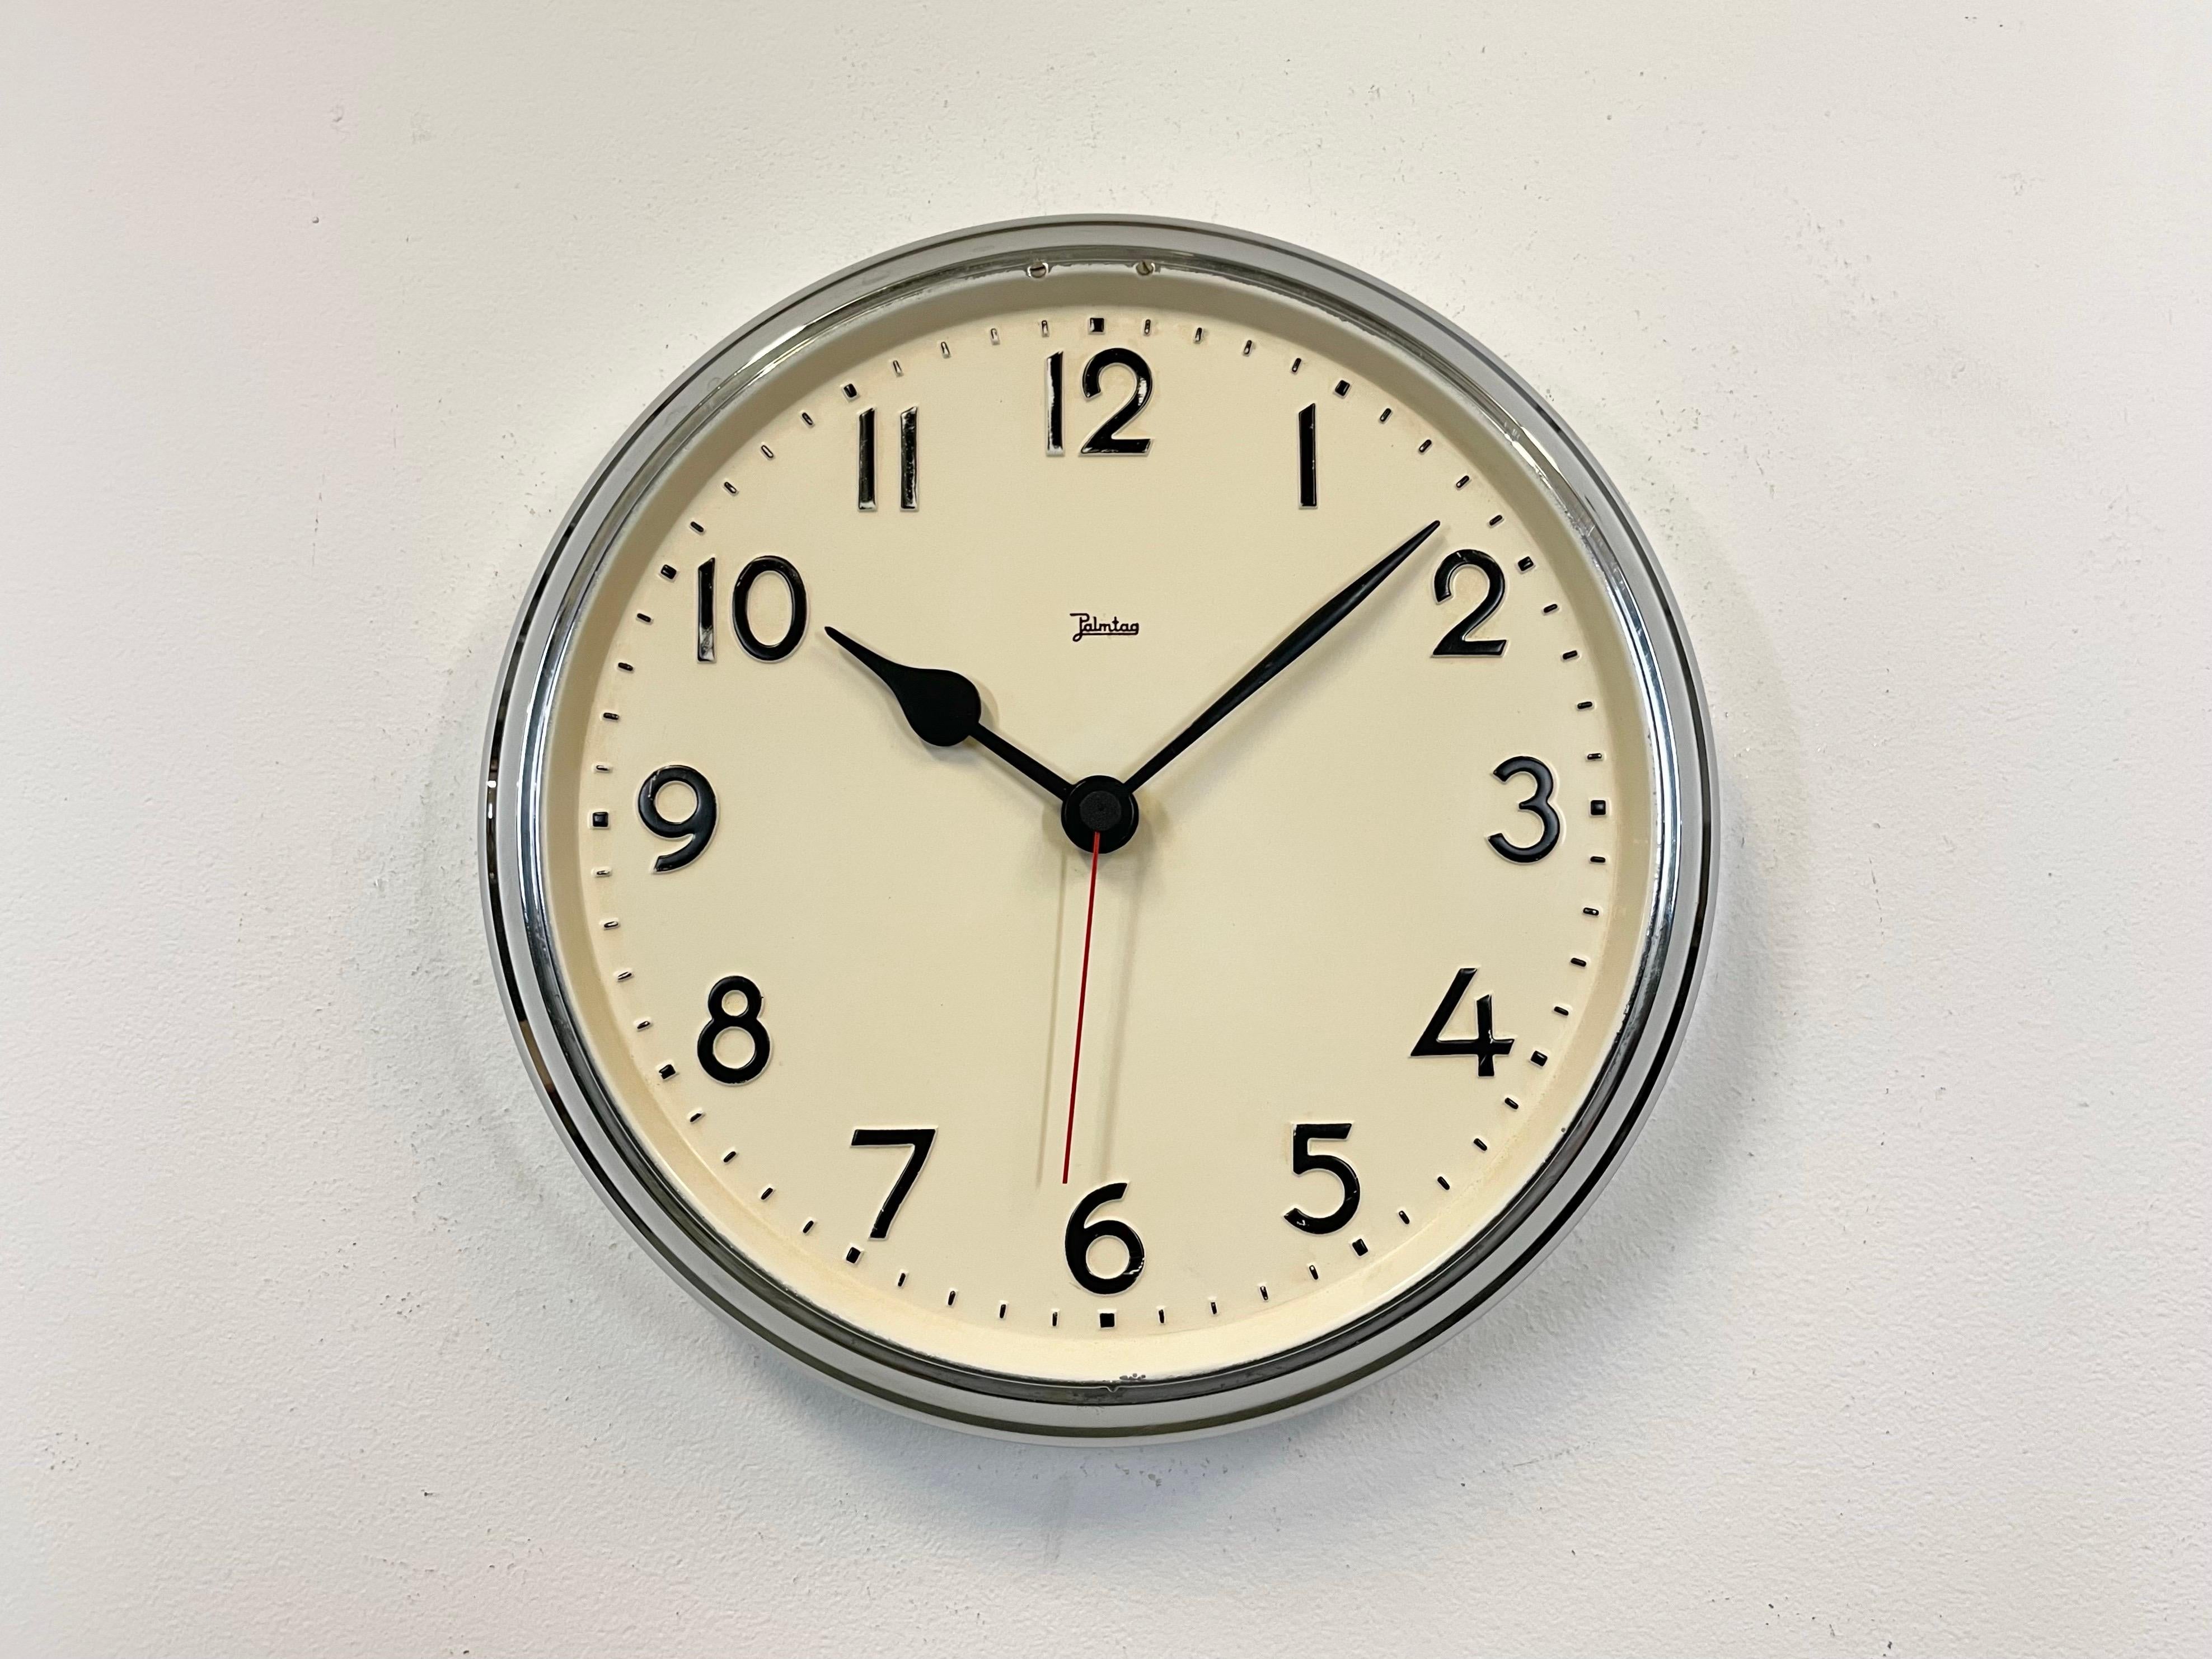 Cette horloge murale d'usine industrielle  a été fabriqué par Jakob Palmtag de Schwenningen en Allemagne dans les années 1950. Elle est dotée d'un cadre en fer chromé, d'un cadran en fer et d'aiguilles en aluminium. L'ancienne horloge d'usine a été